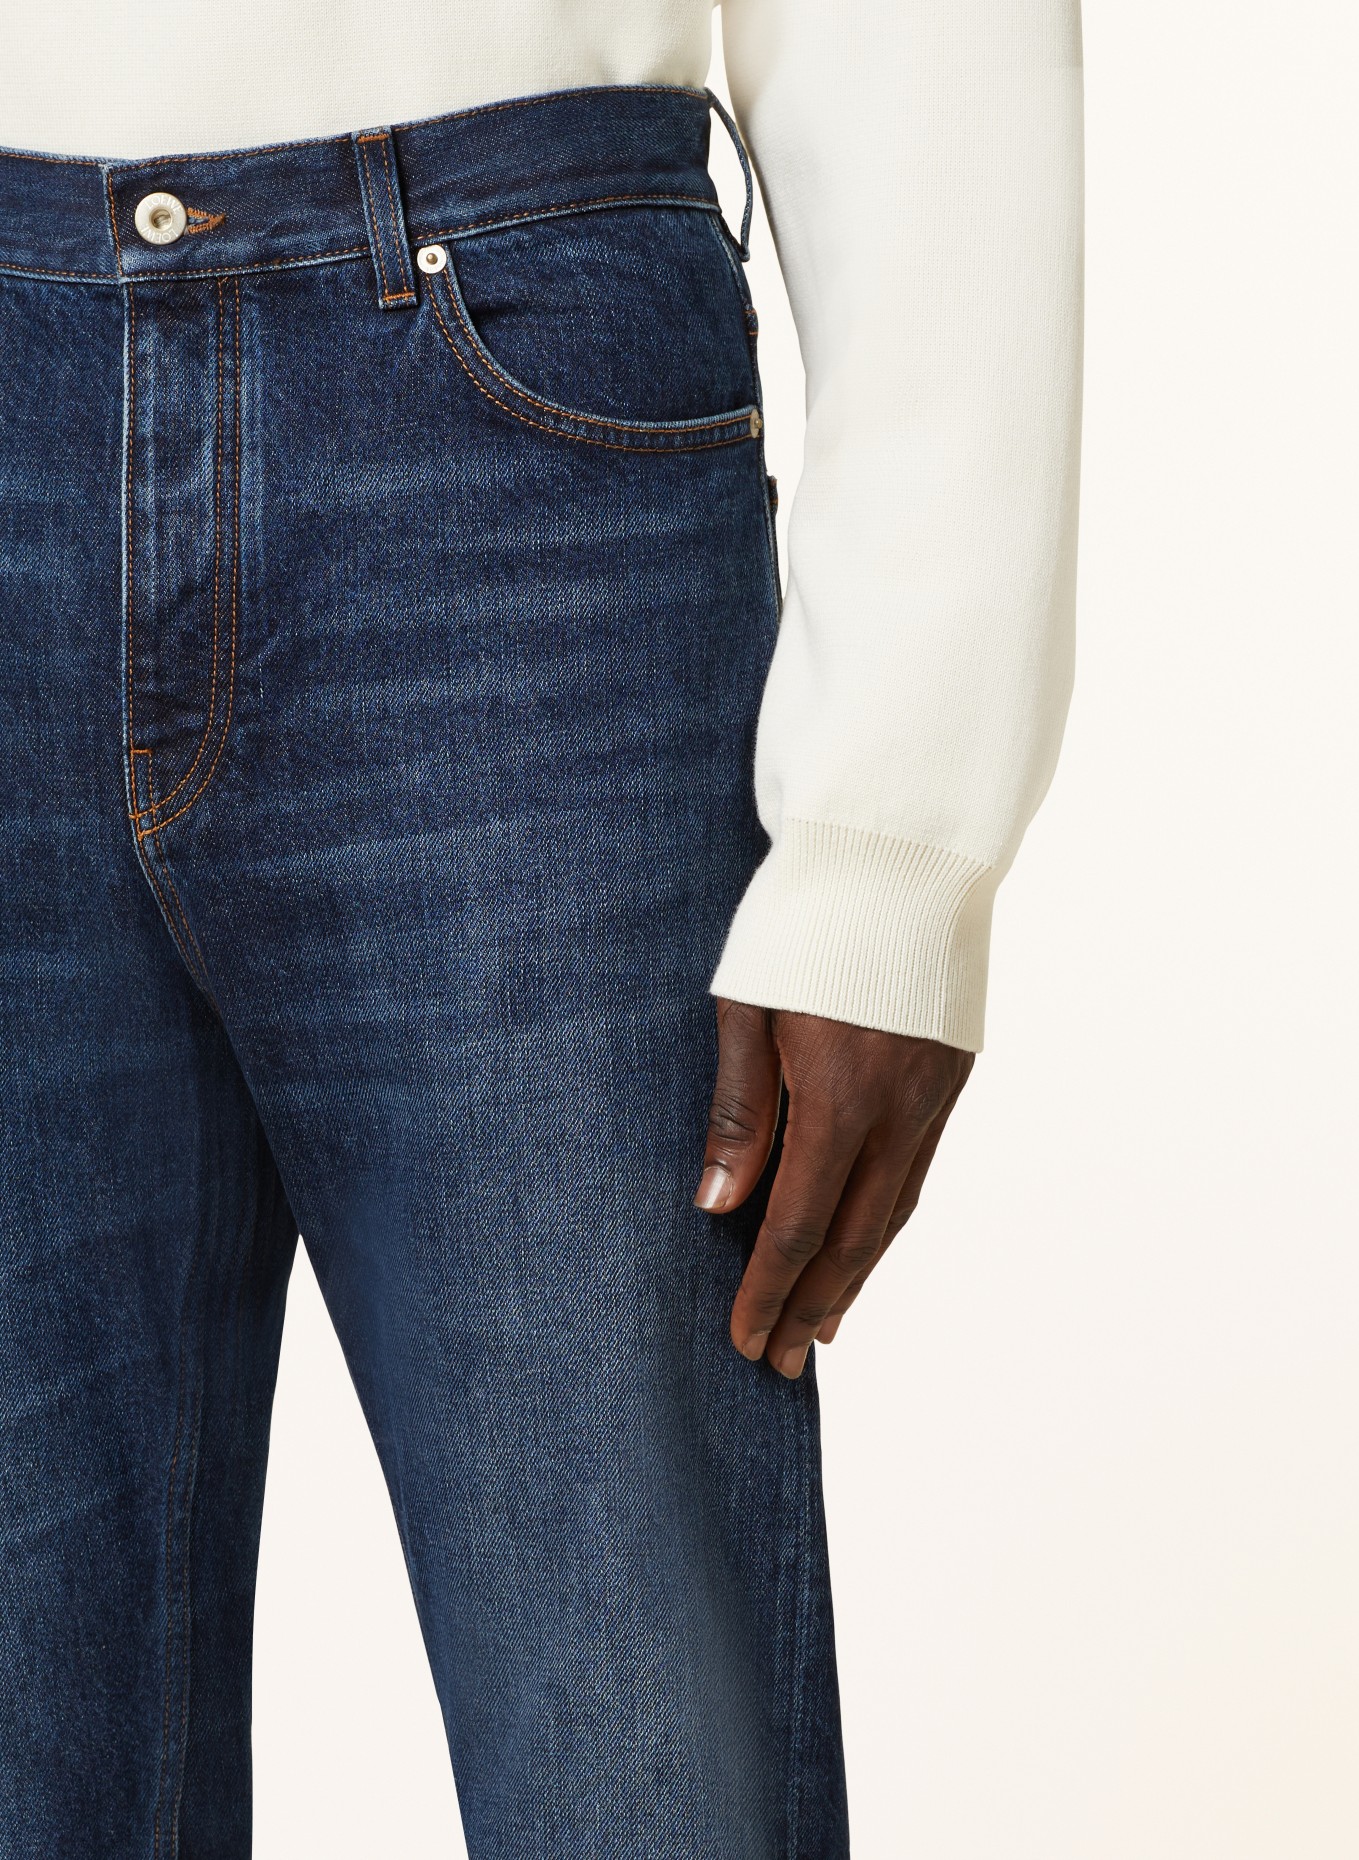 LOEWE Jeans FISHERMAN TURN UP Regular Fit, Farbe: 8383 WASHED INDIGO (Bild 5)